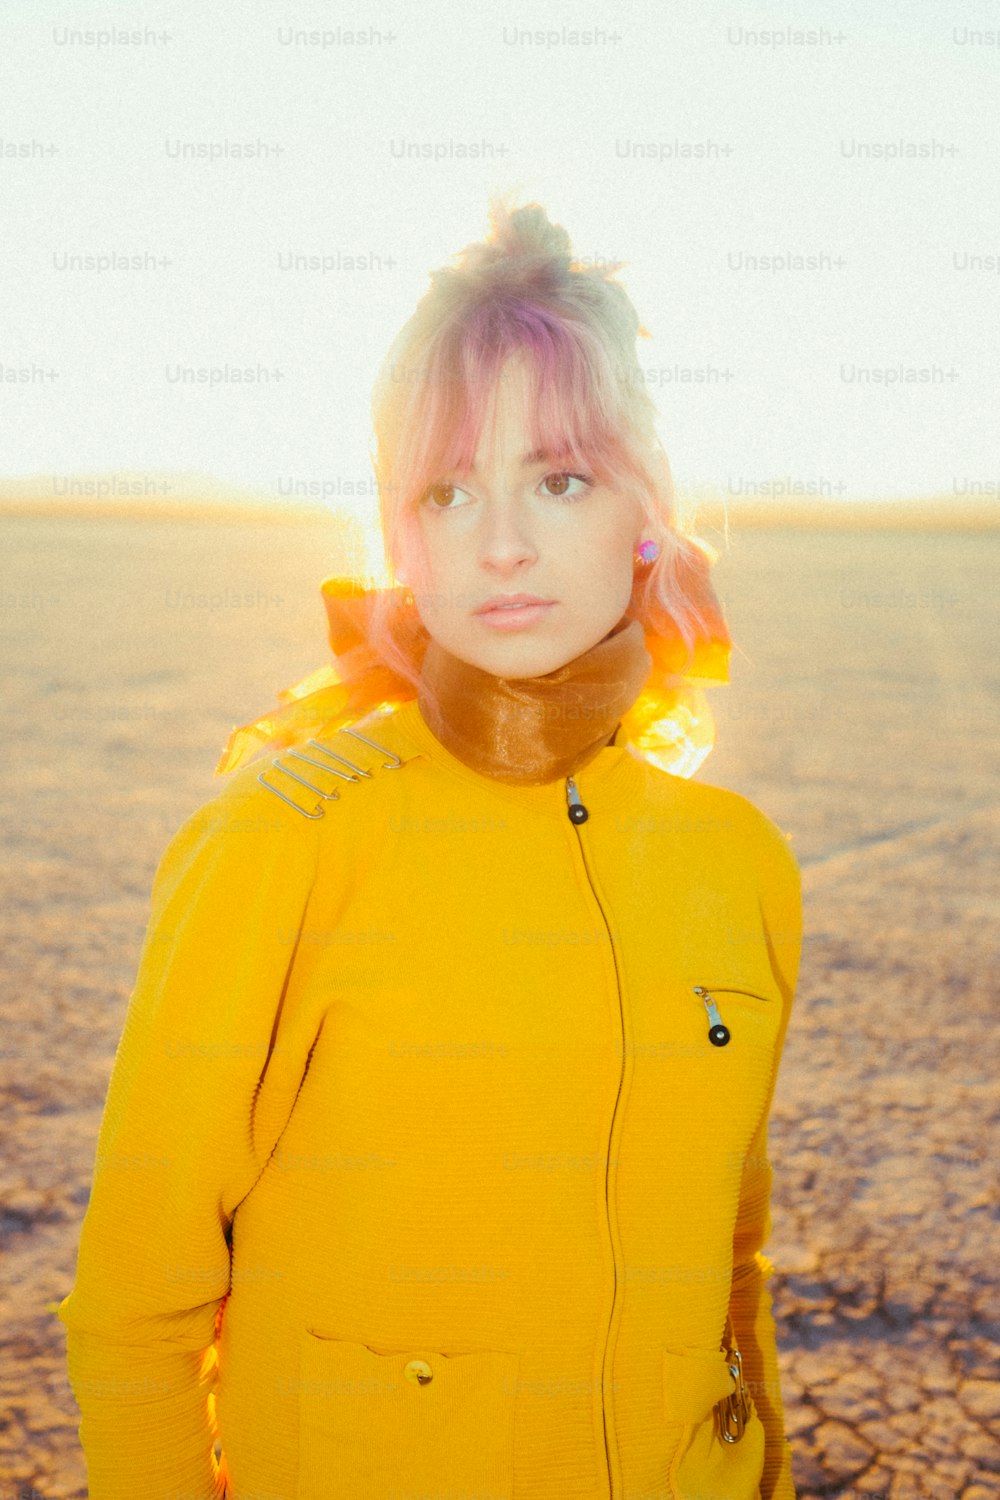 Una mujer con una chaqueta amarilla parada en el desierto